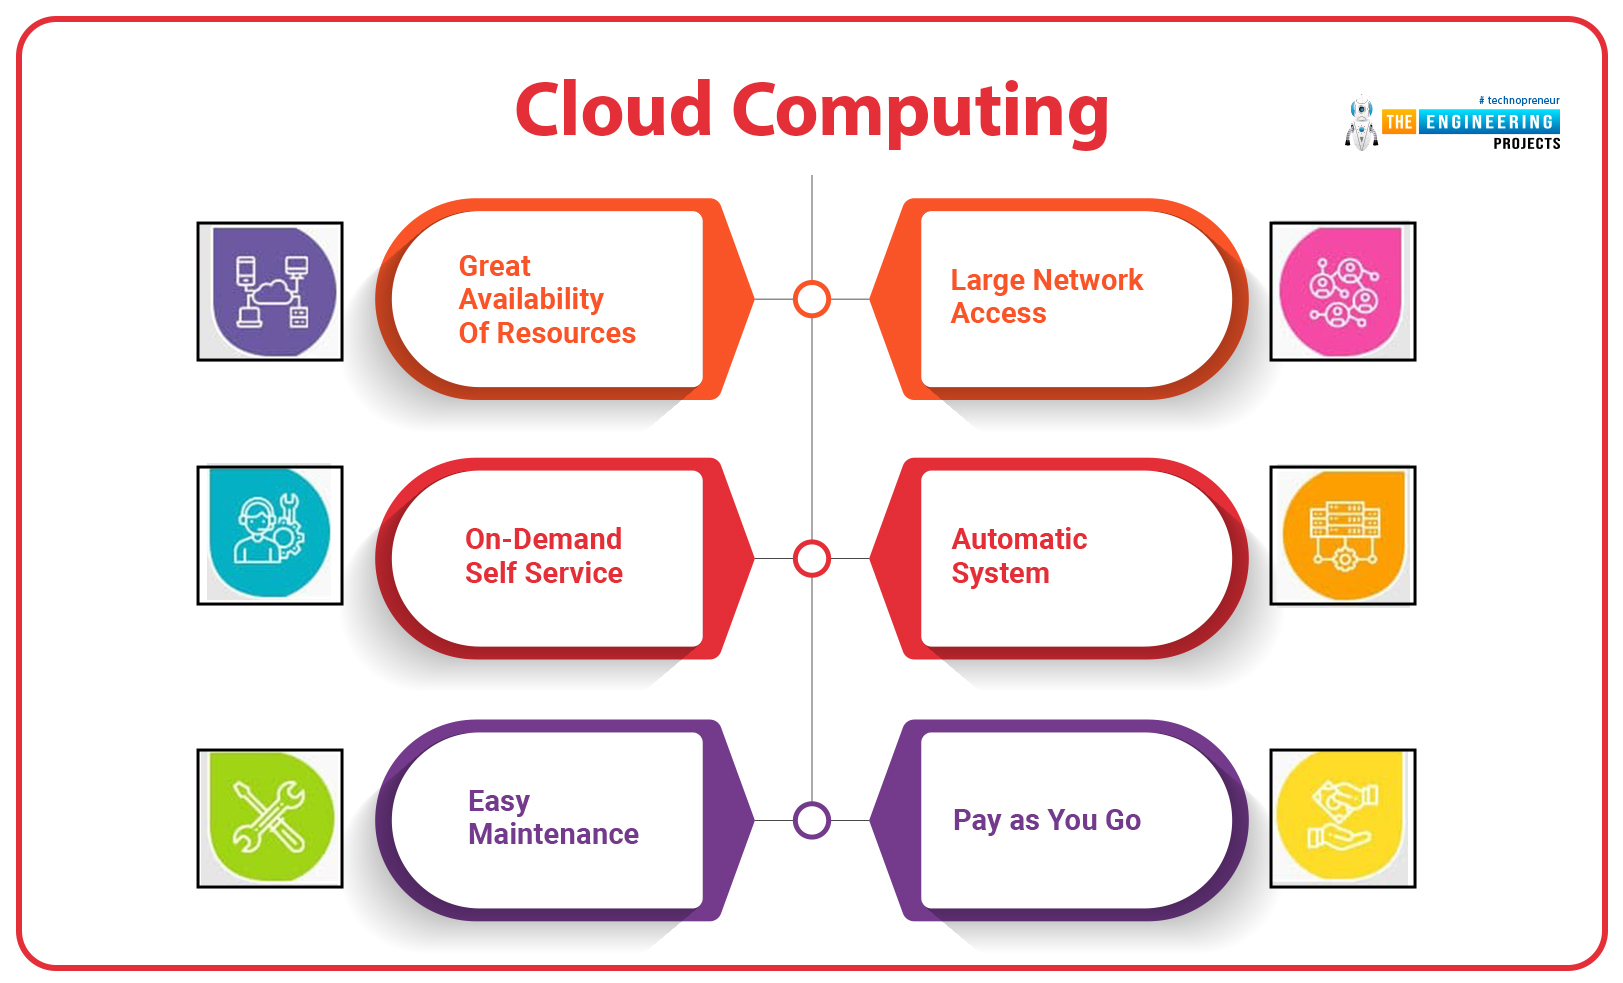 Cloud Computing Advantages, Advantages of Cloud Computing, why cloud computing, cloud computing basics, cloud computing benefits